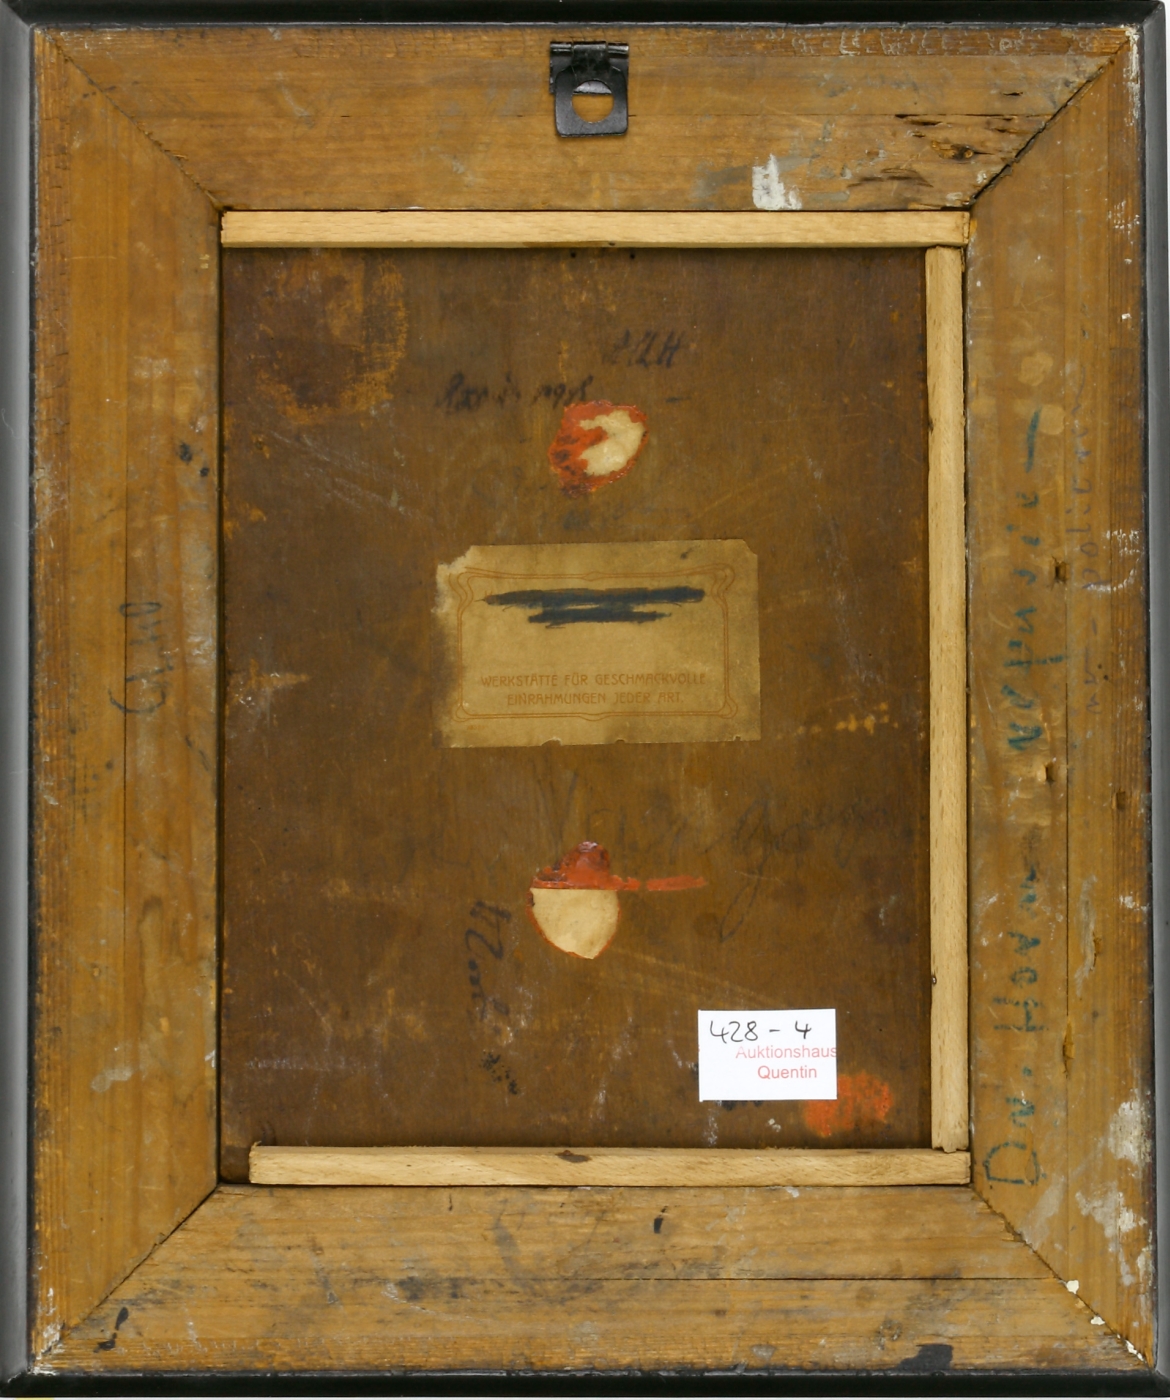 Auktionshaus Quentin Berlin  Gemälde PortrÃ¤tmaler 17./18. Jh.  Bildnis eines Edelmannes mit SchriftstÃ¼ck